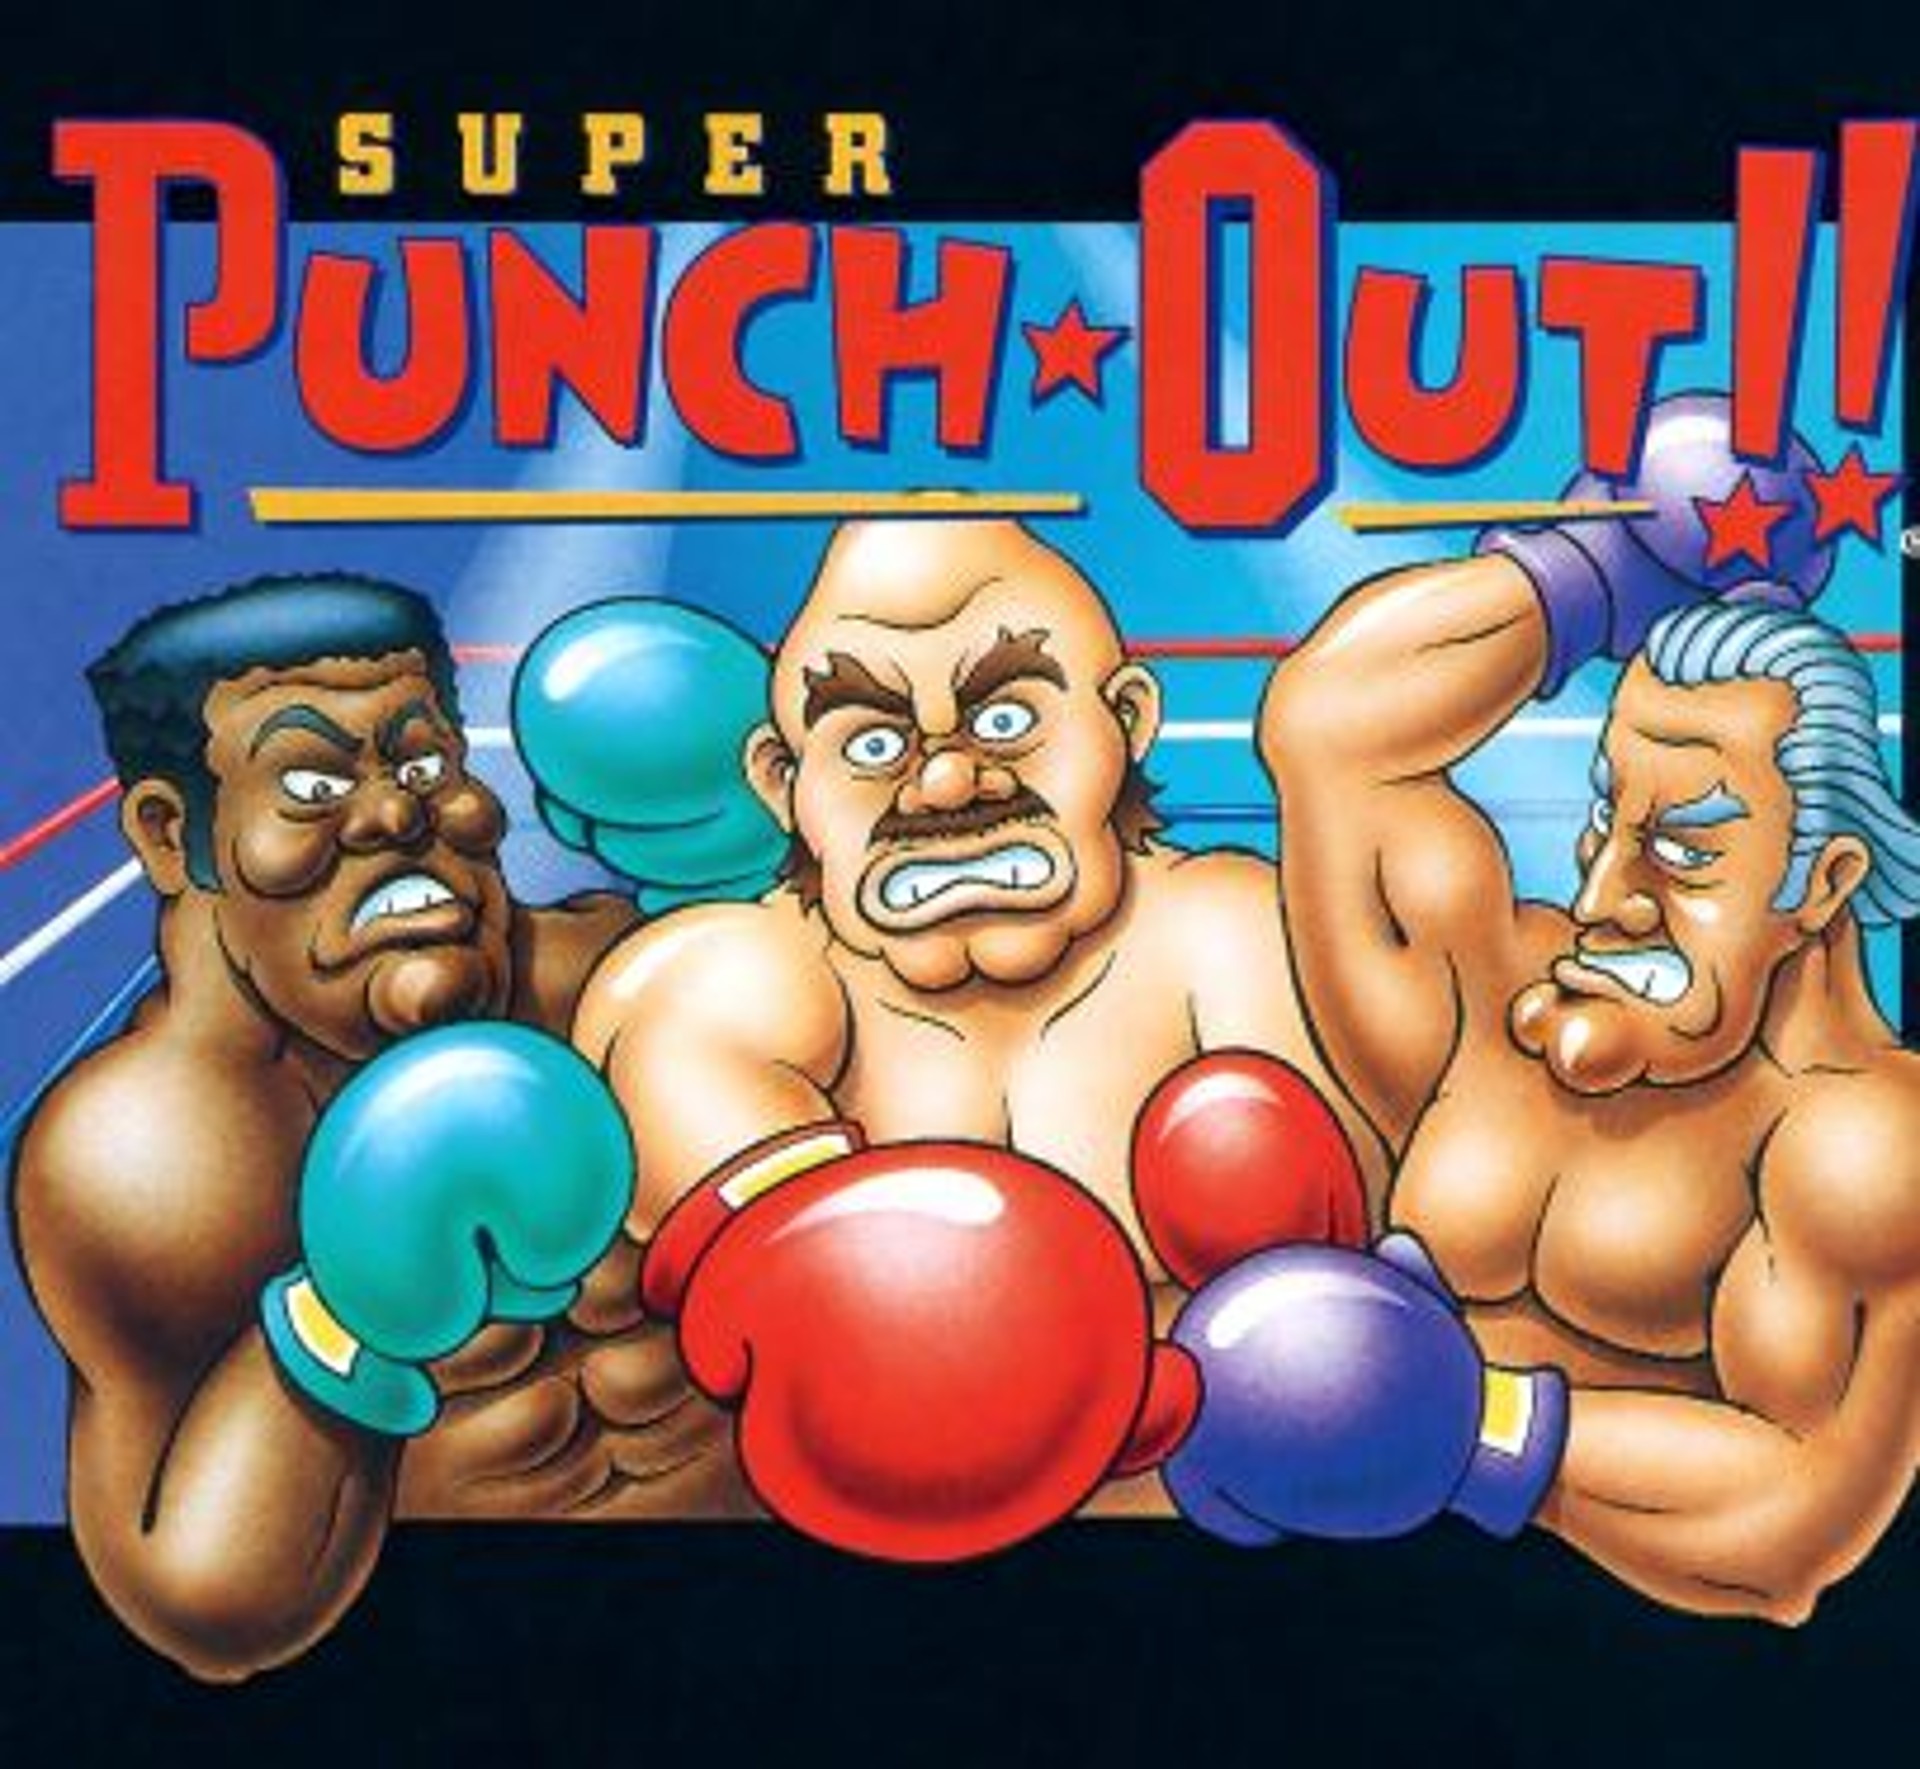 มีผู้ค้นพบโหมดสองผู้เล่นที่ซ่อนอยู่ใน Super Punch-Out!!